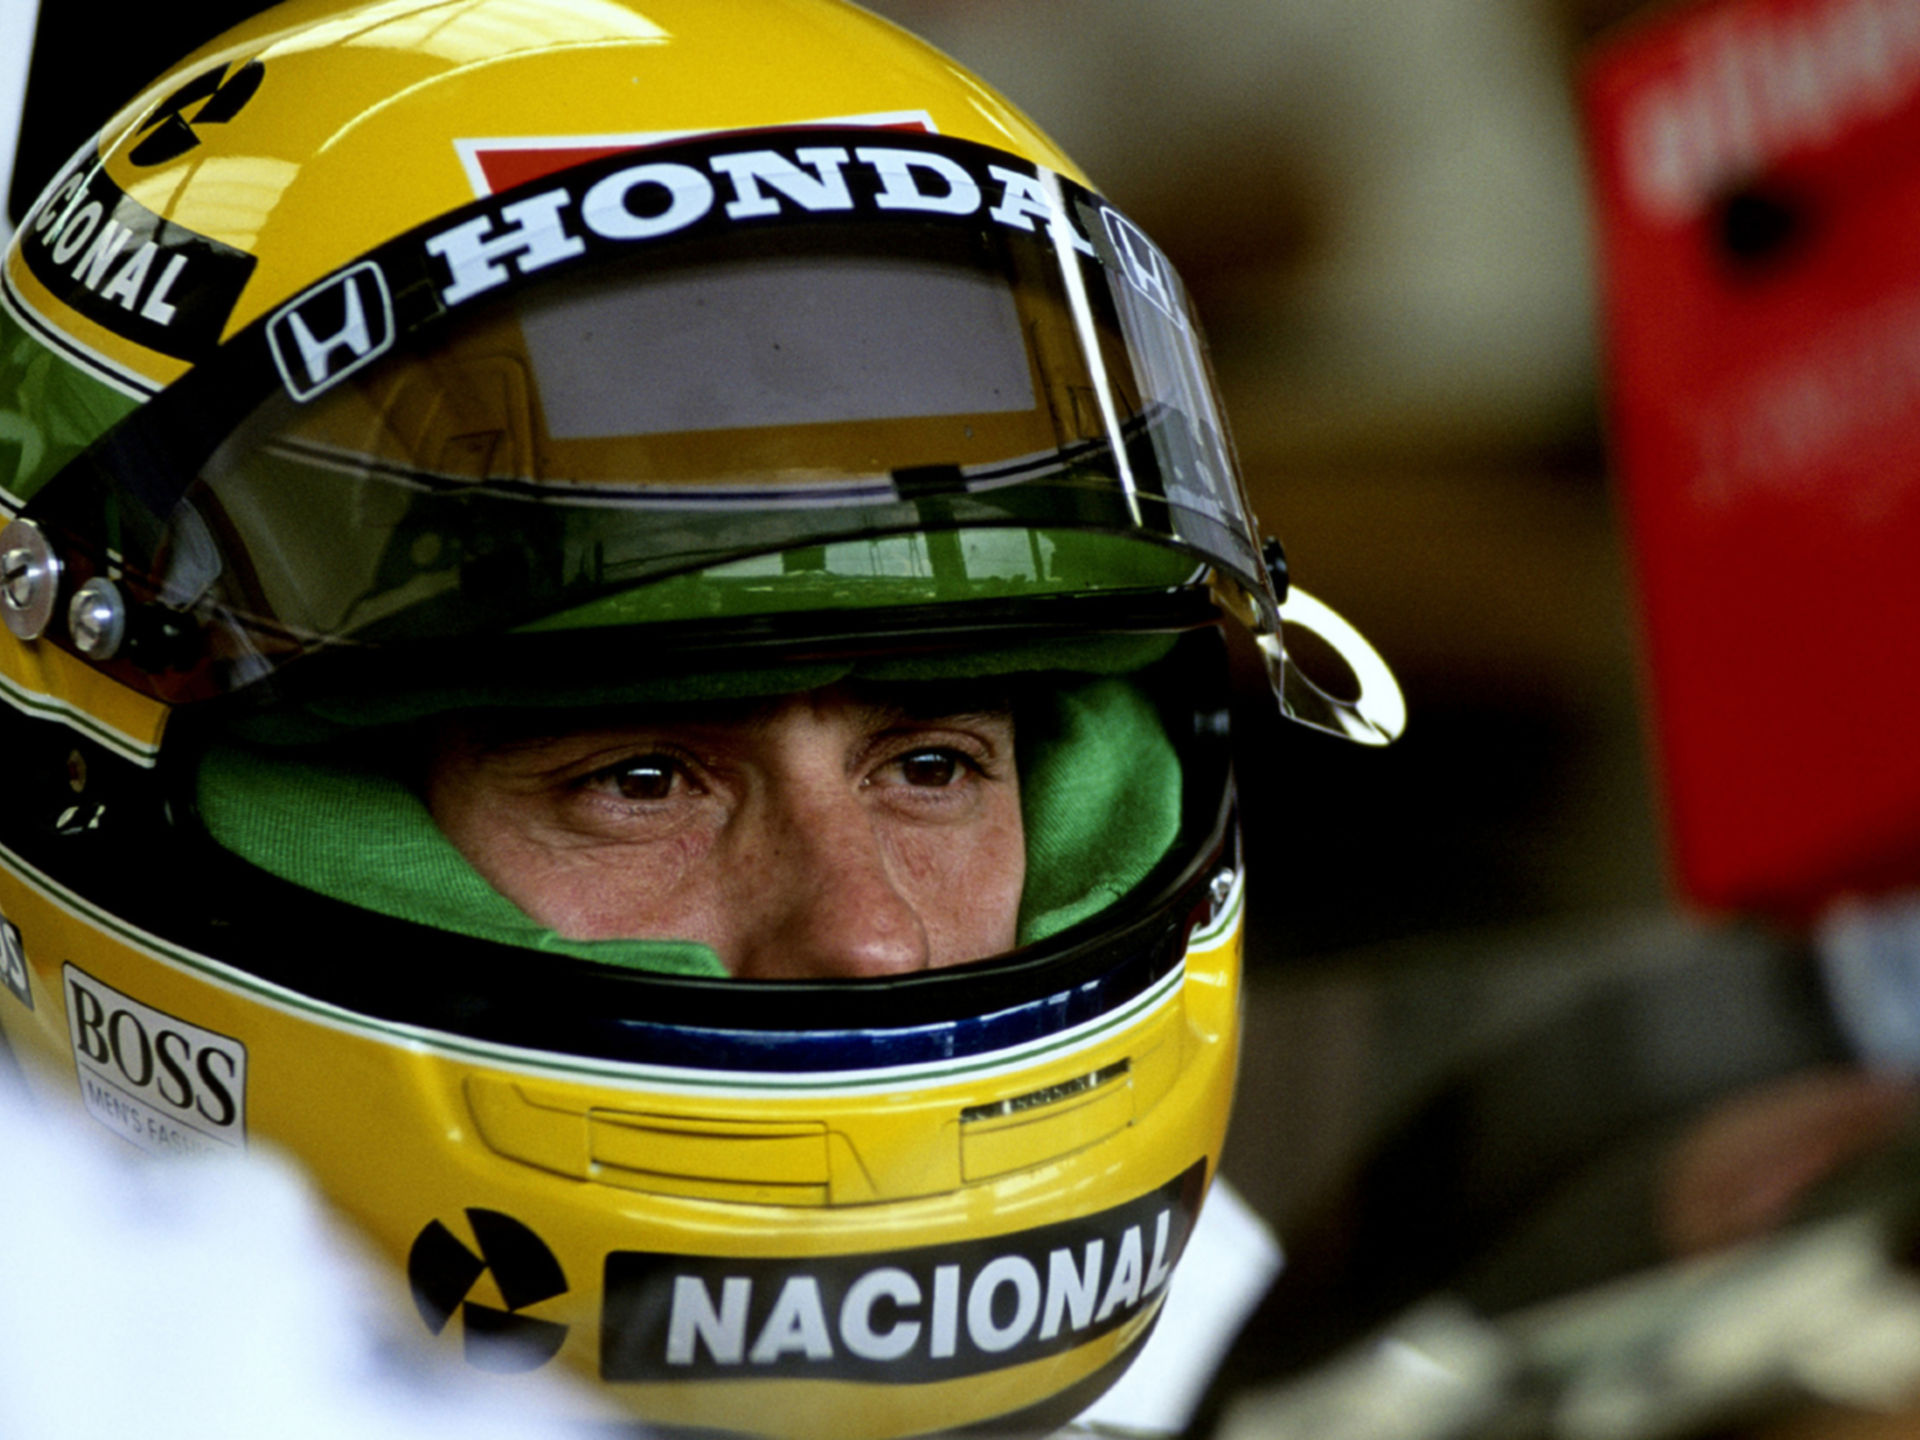 McLaren Senna - The Racing Legend Ayrton Senna, McLaren Automotive